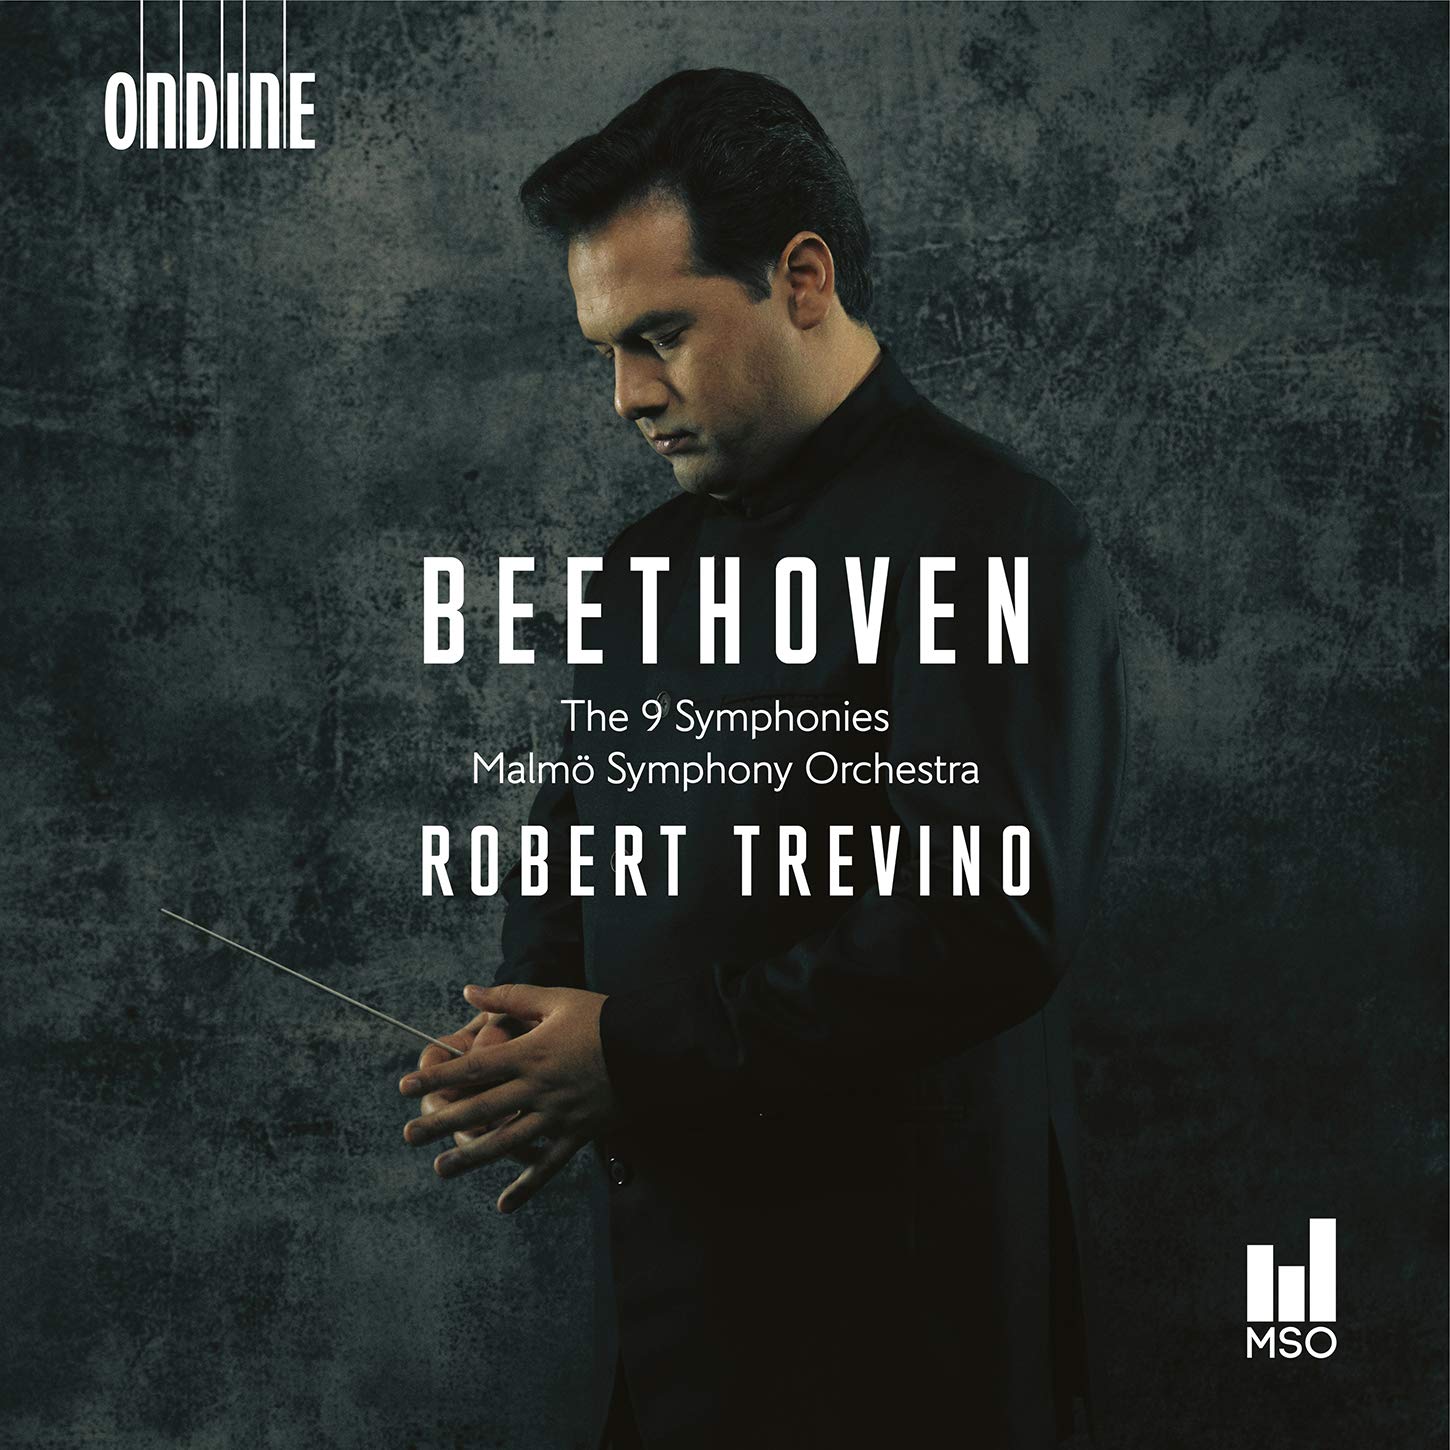 Audio Cd Ludwig Van Beethoven - The 9 Symphonies (Sacd) NUOVO SIGILLATO, EDIZIONE DEL 15/05/2020 SUBITO DISPONIBILE